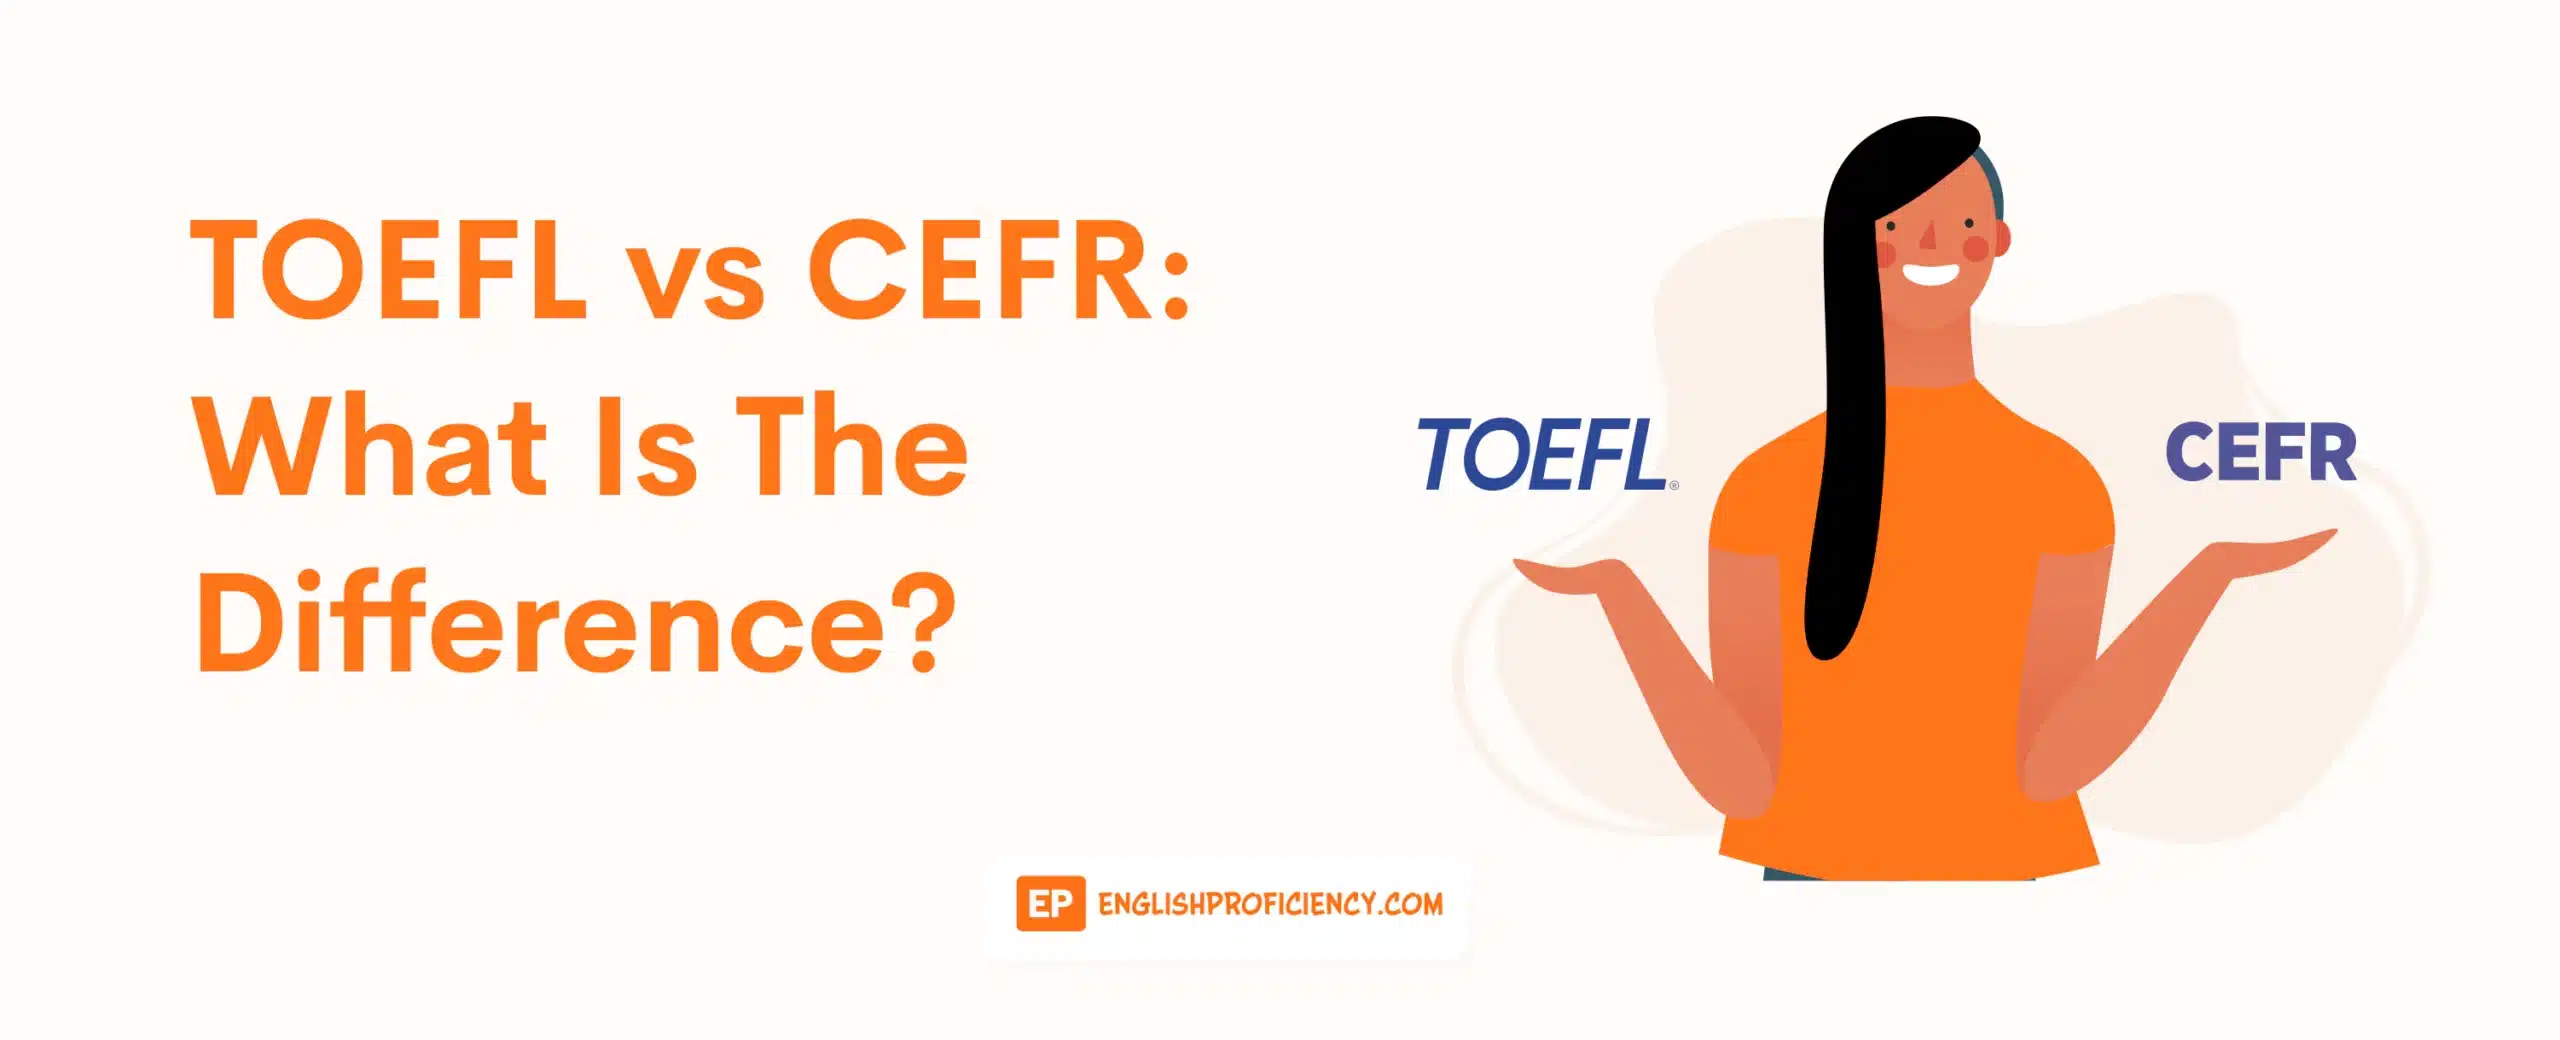 TOEFL vs CEFR